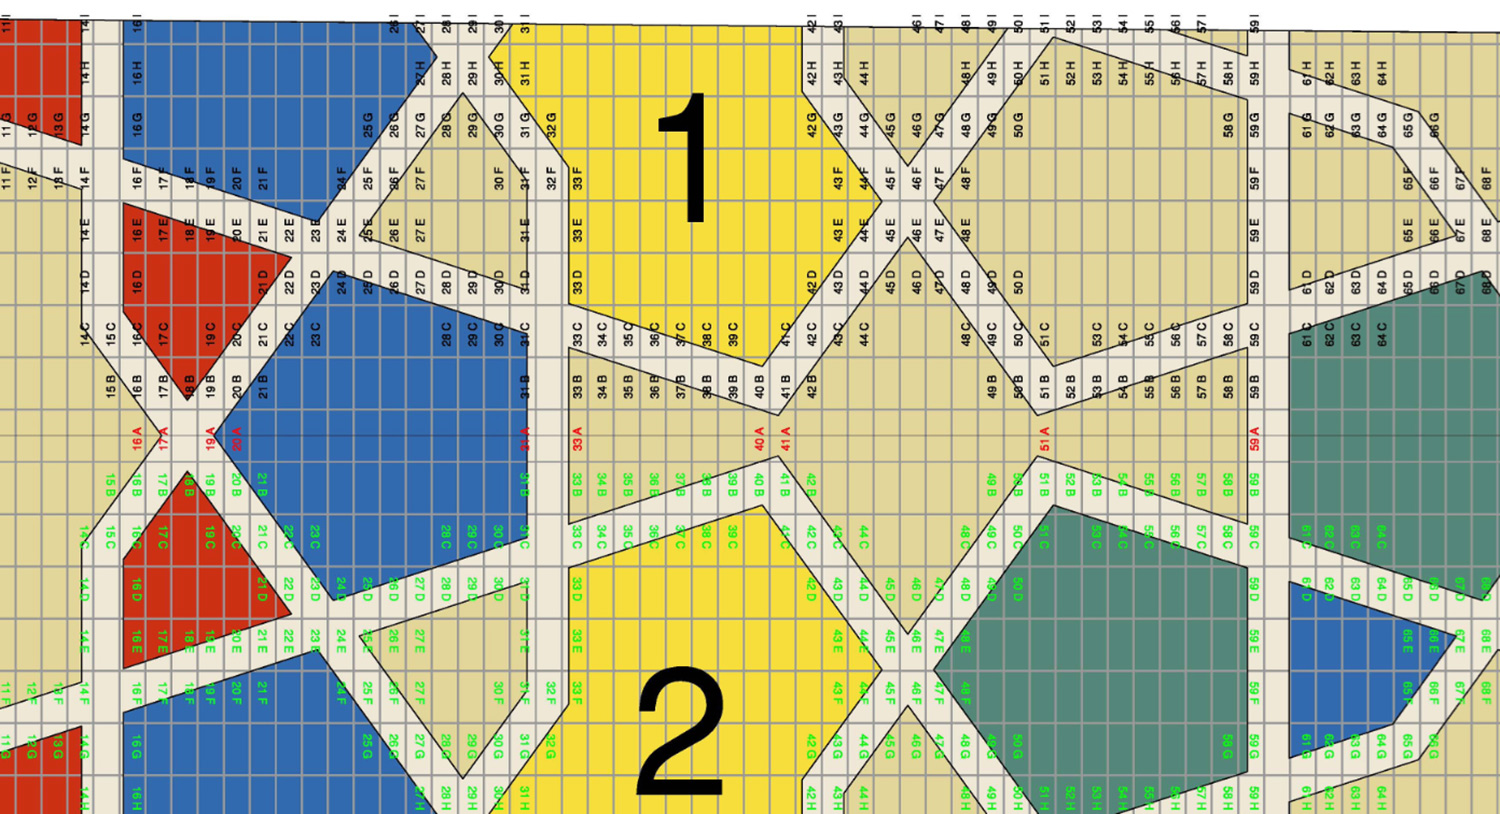  AutoCAD tile pattern diagram (detail)   